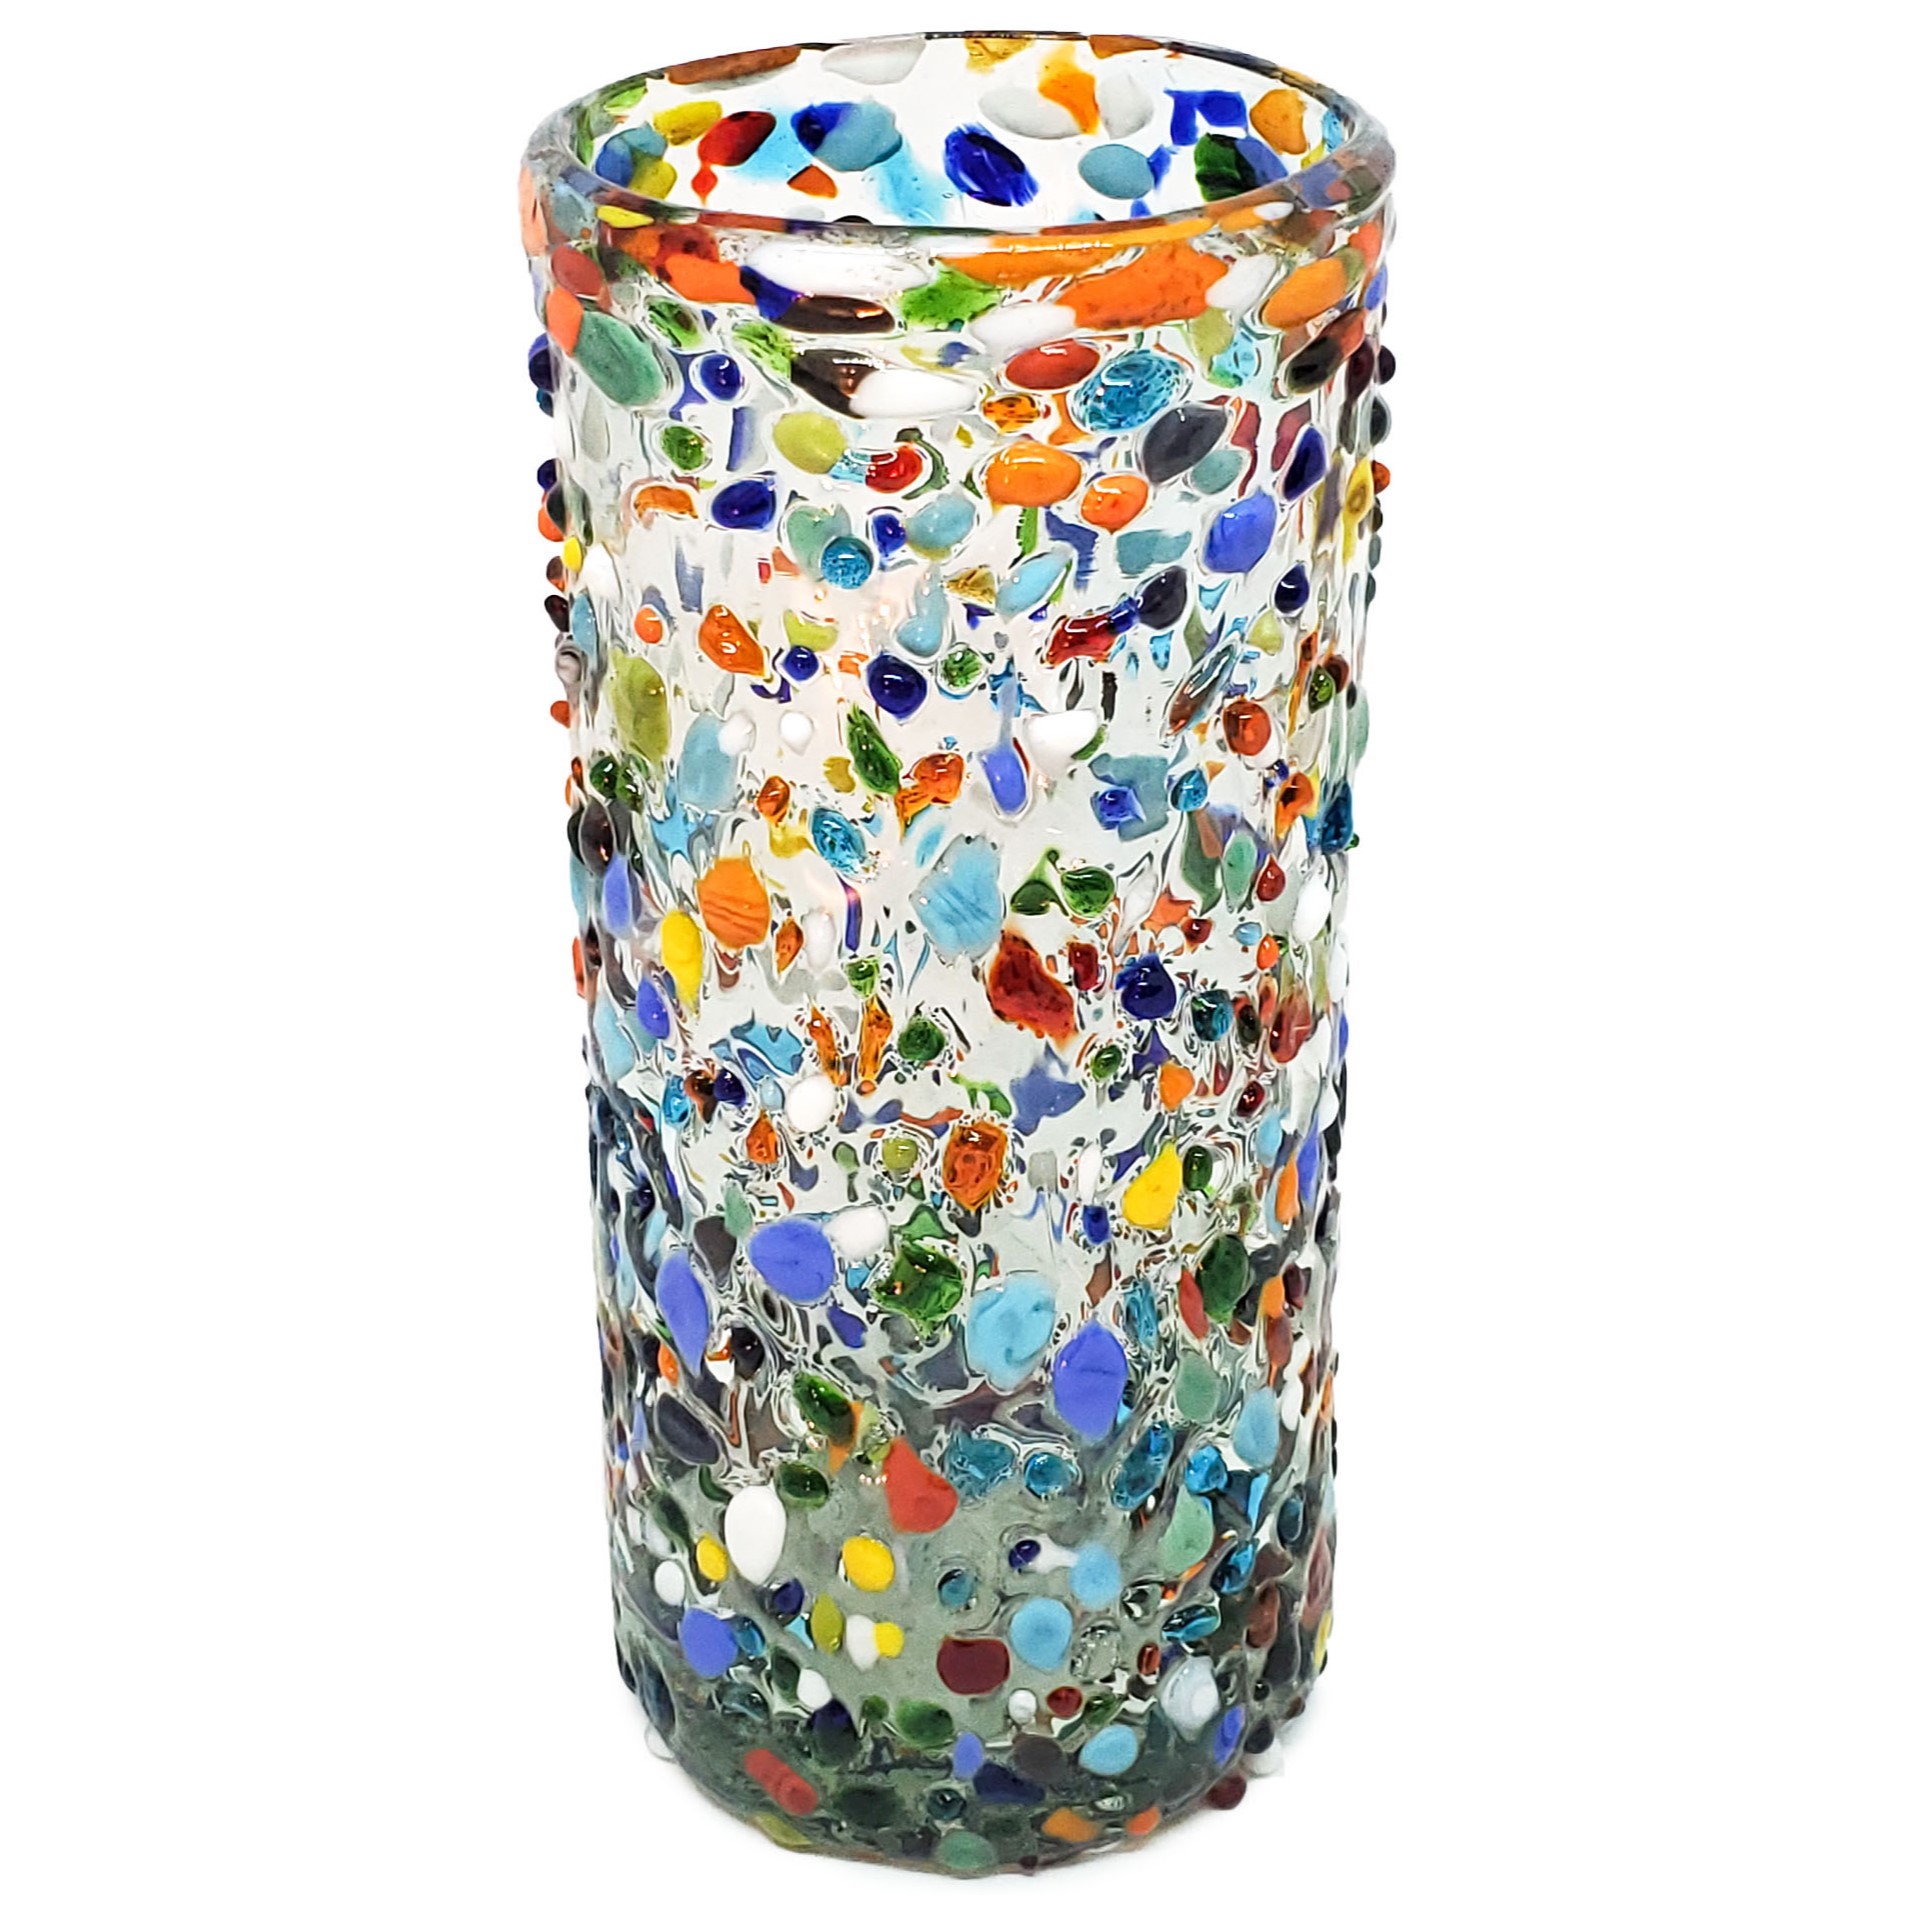 MEXICAN GLASSWARE / Confetti Rocks 20 oz Tall Iced Tea Glasses 